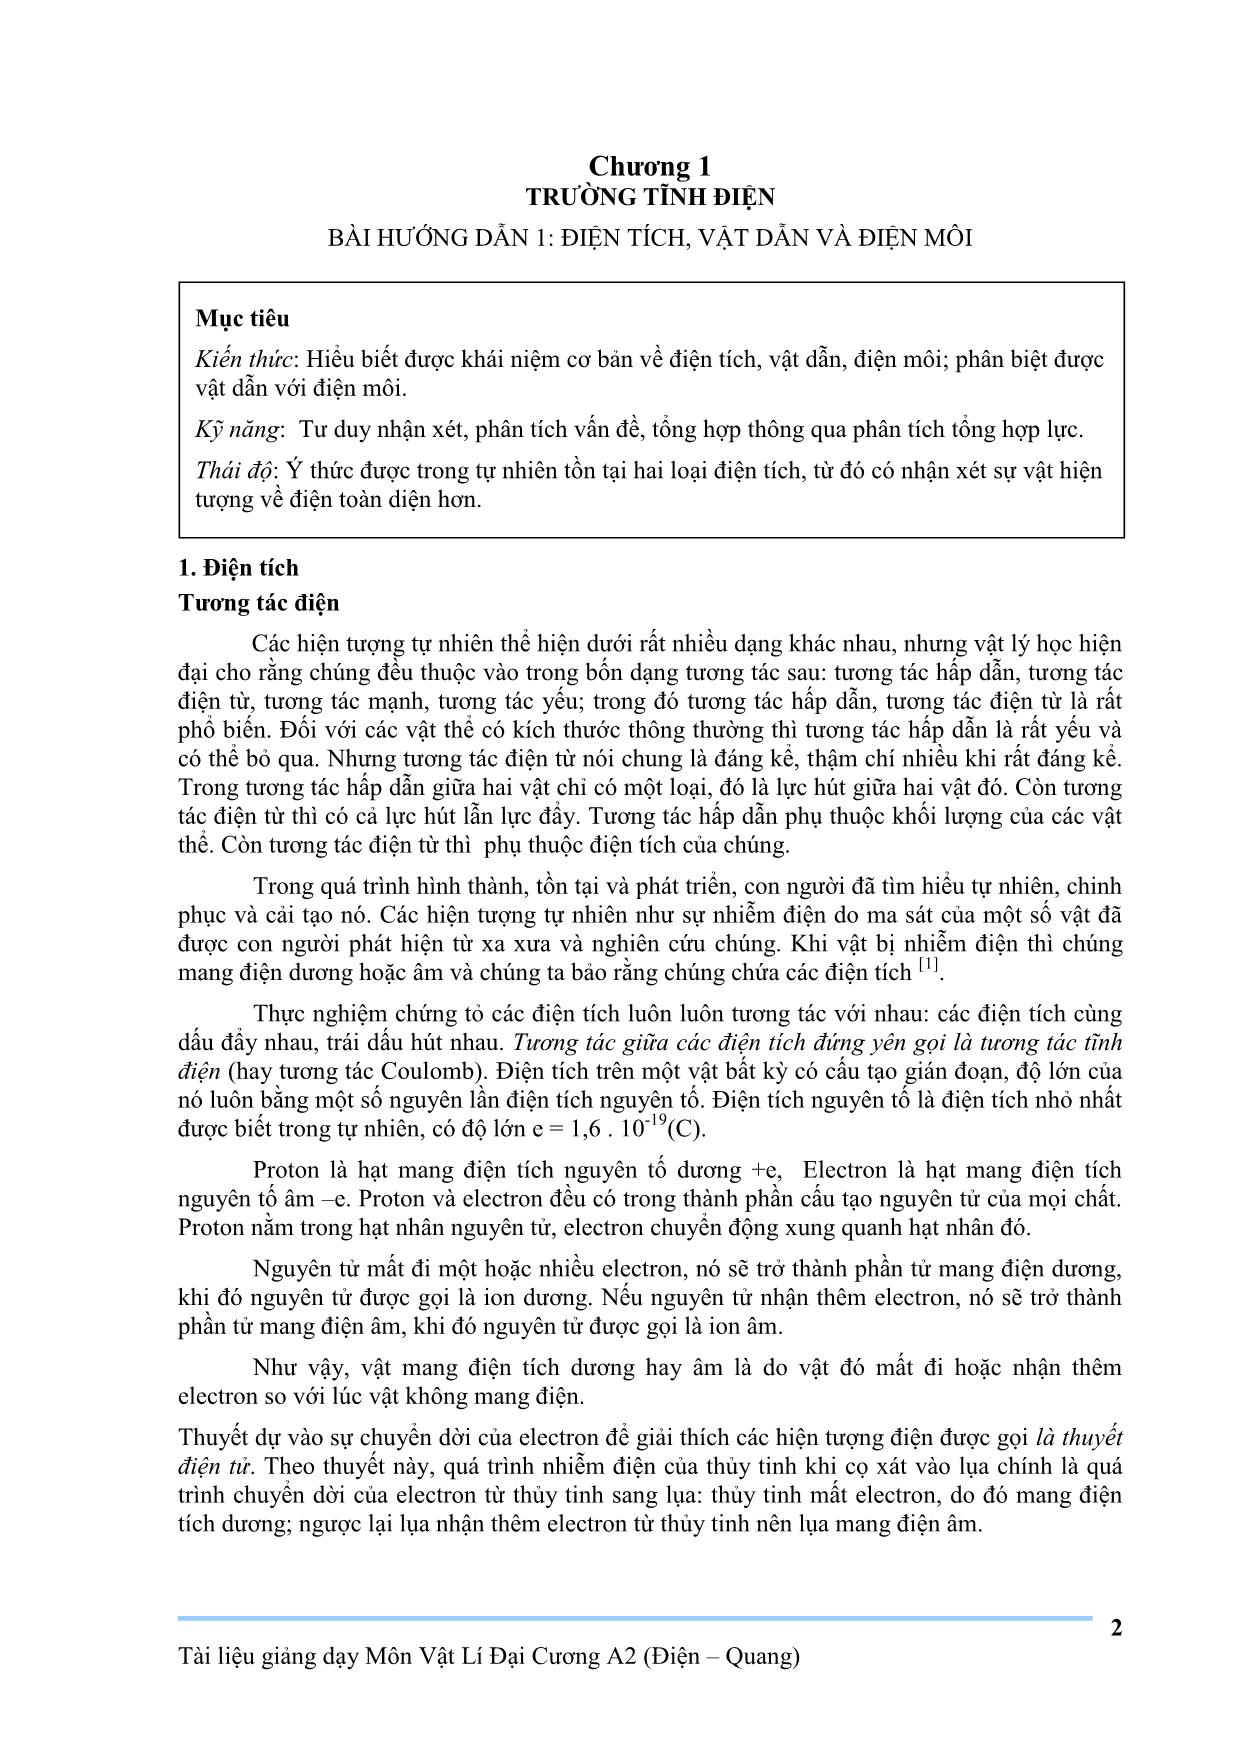 Giáo trình Vật lý đại cương A2 trang 2